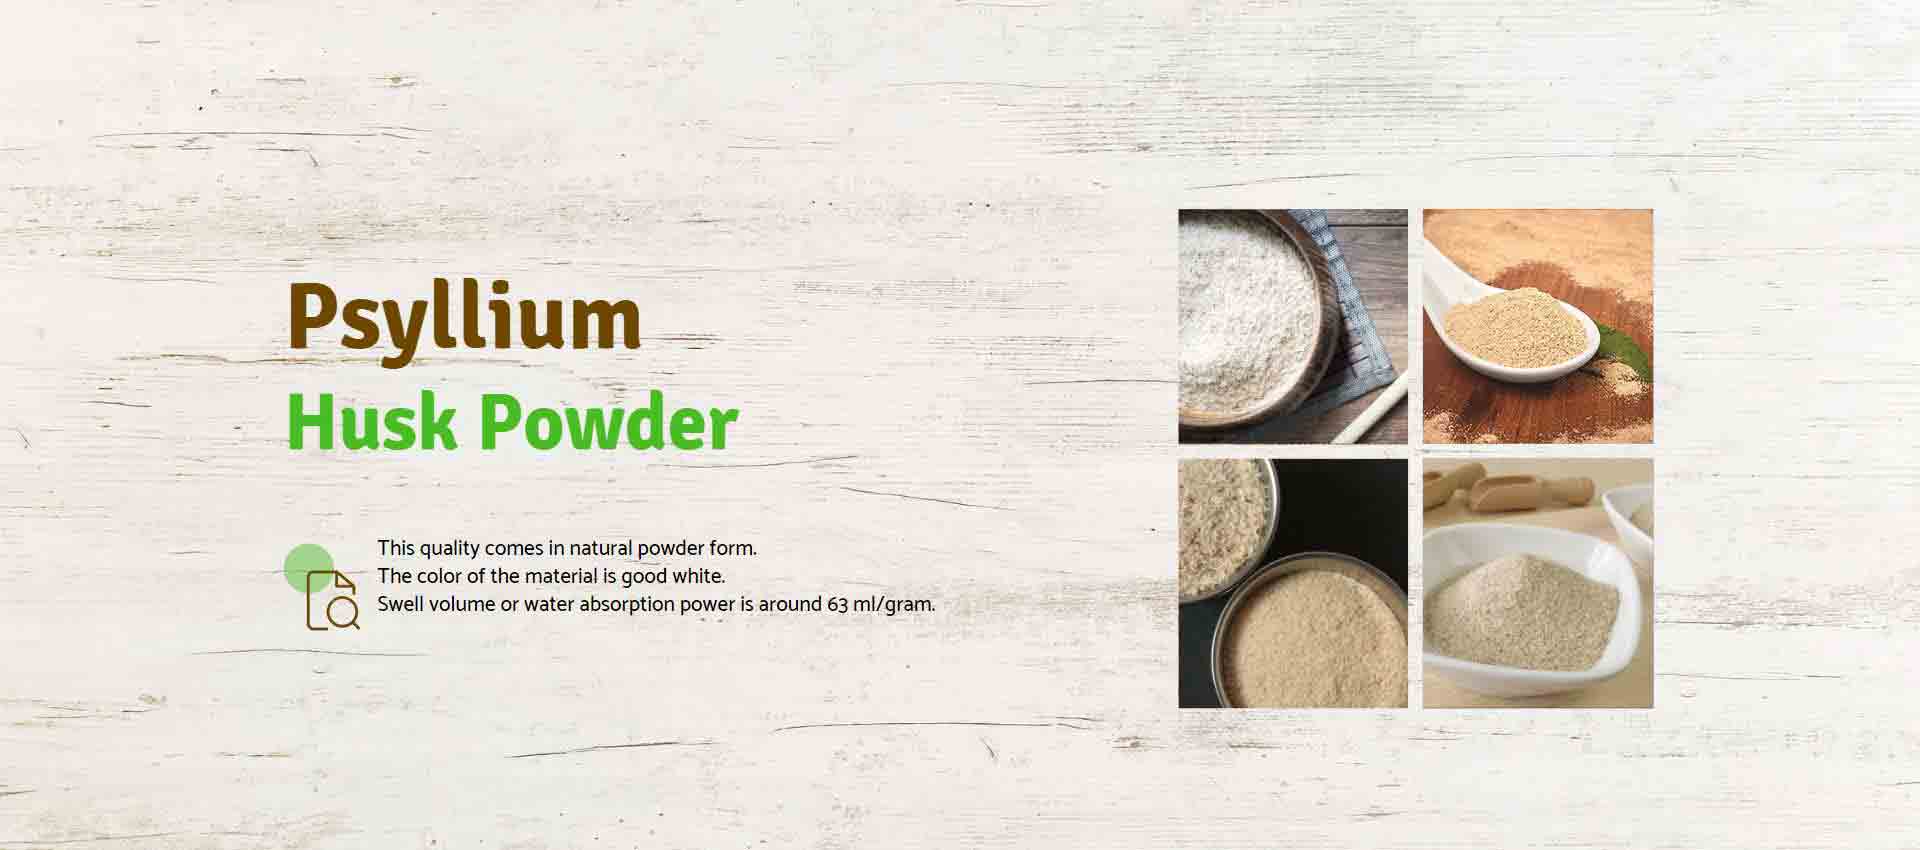 Psyllium Husk Powder Manufacturers in Andhra Pradesh